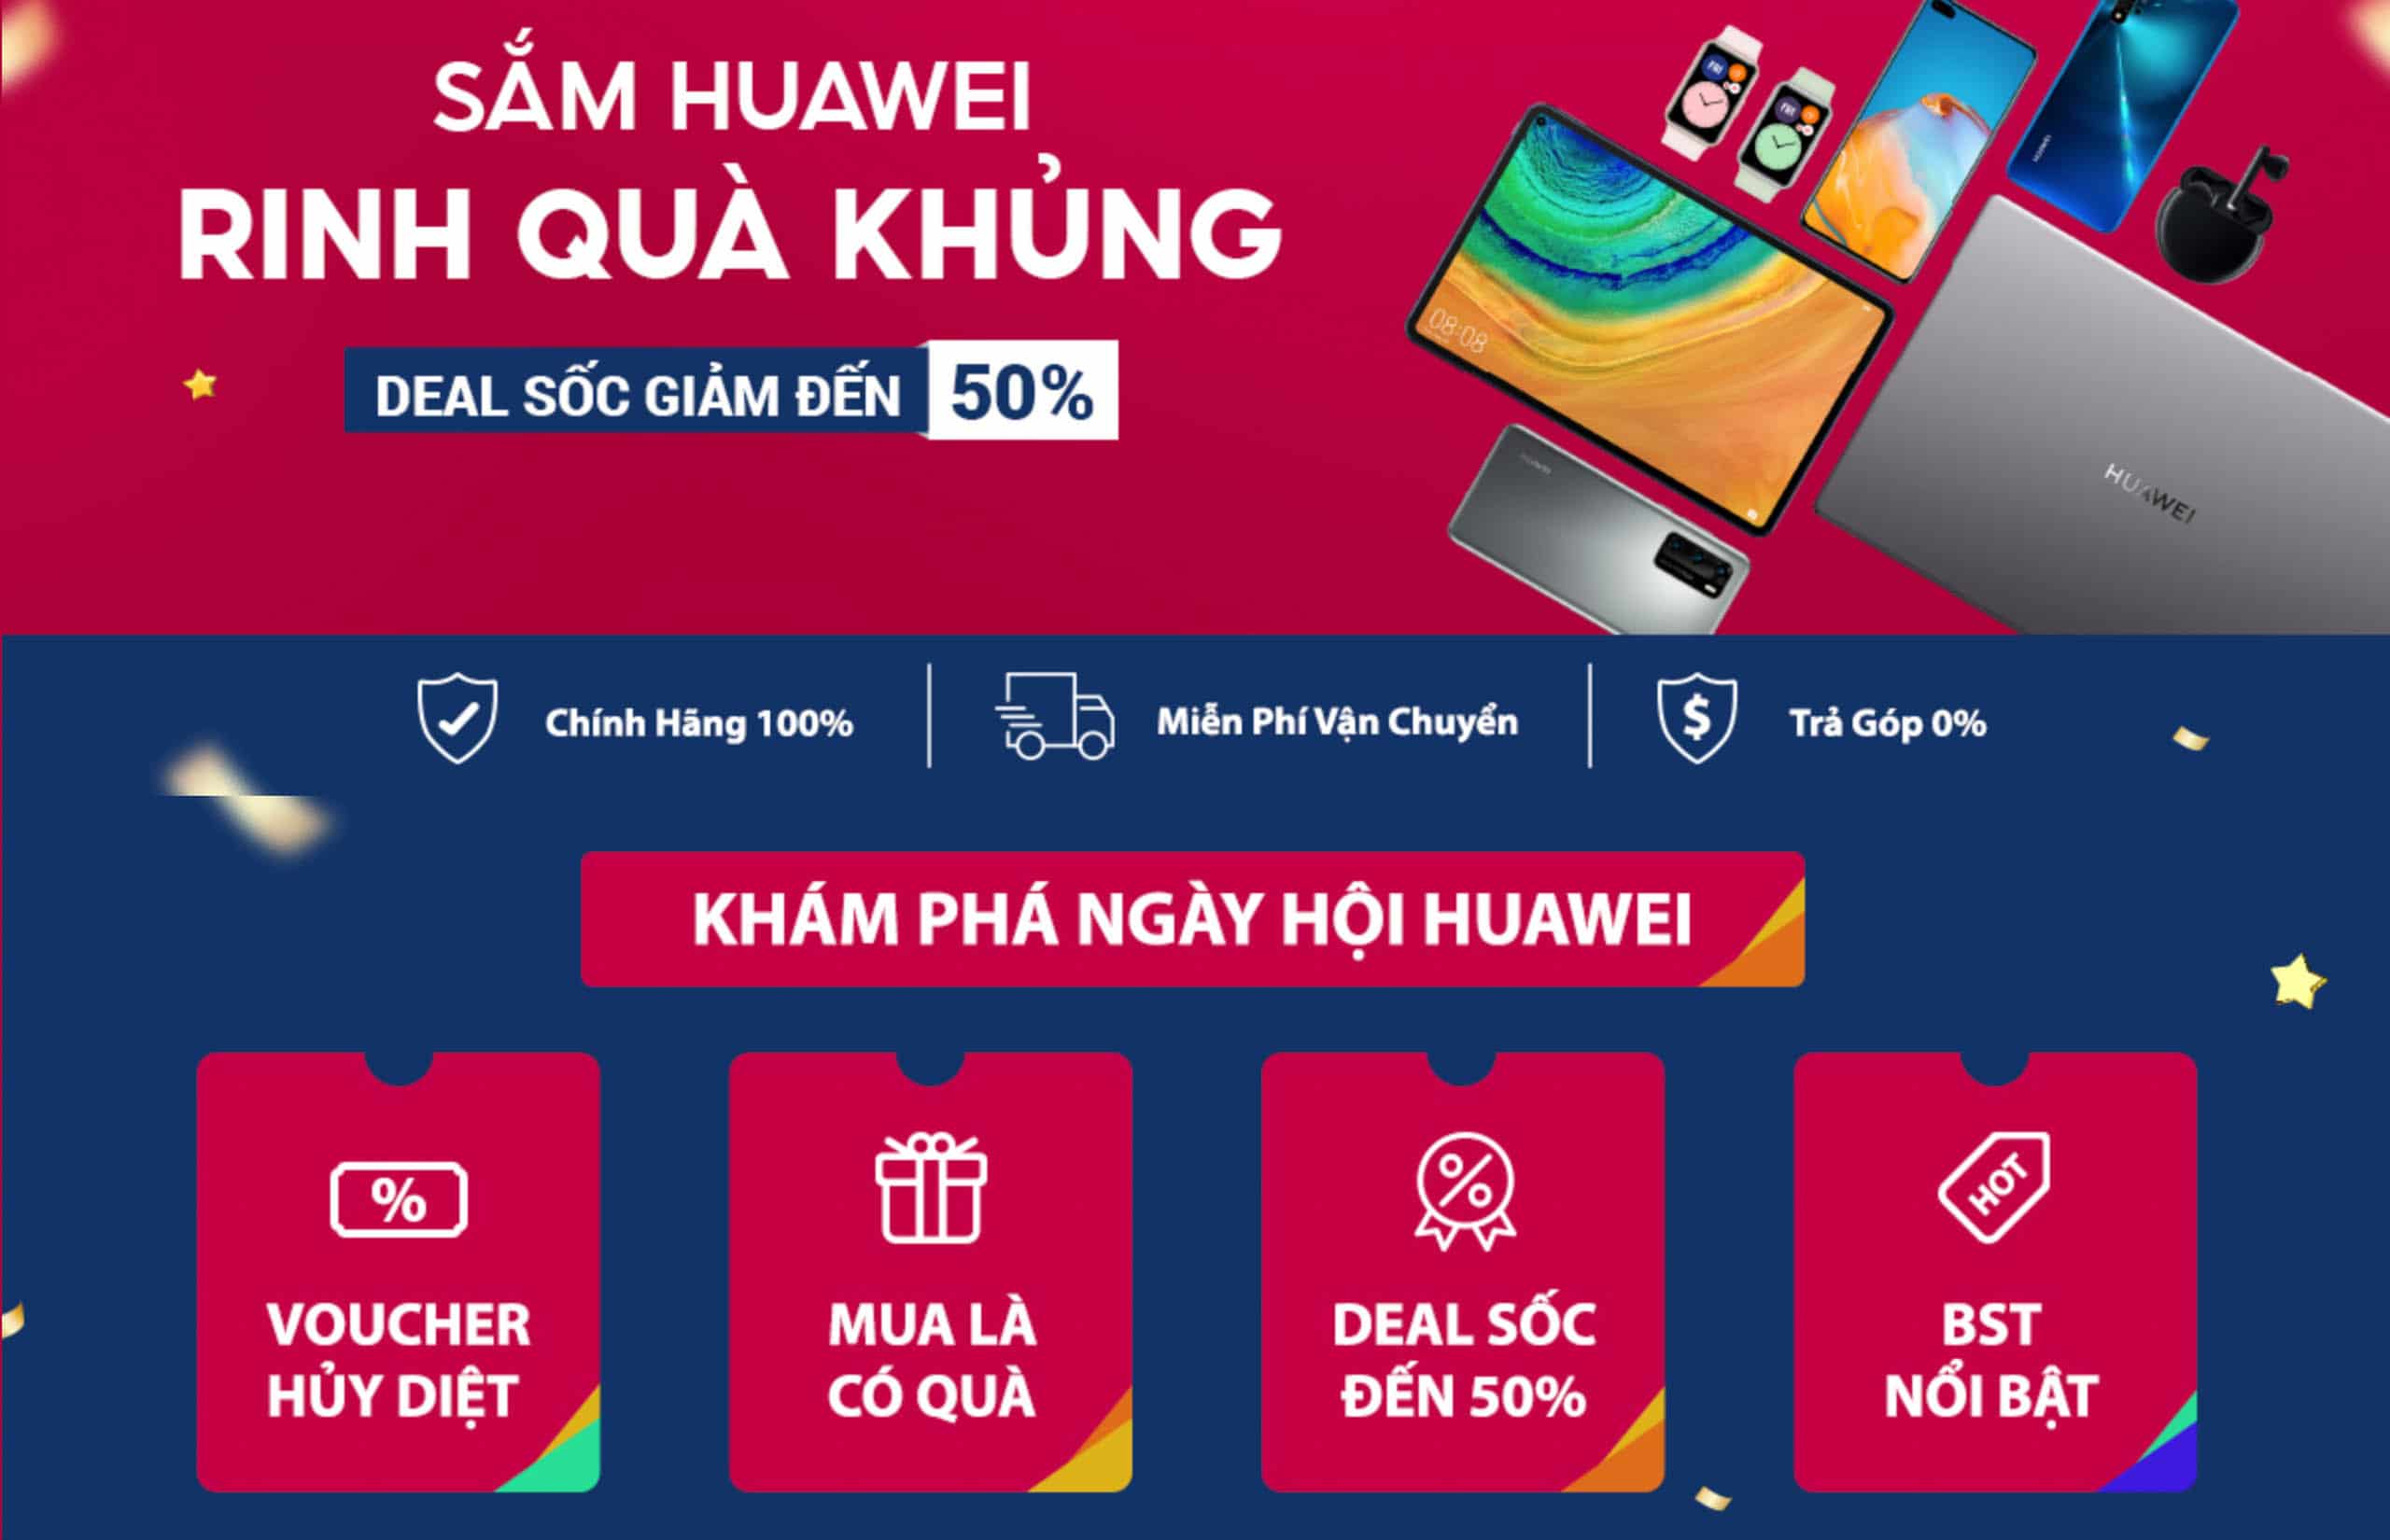 Huawei khuấy động người dùng Việt Nam với nhiều chương trình khuyến mãi độc đáo nhân Ngày hội Huawei 03/10